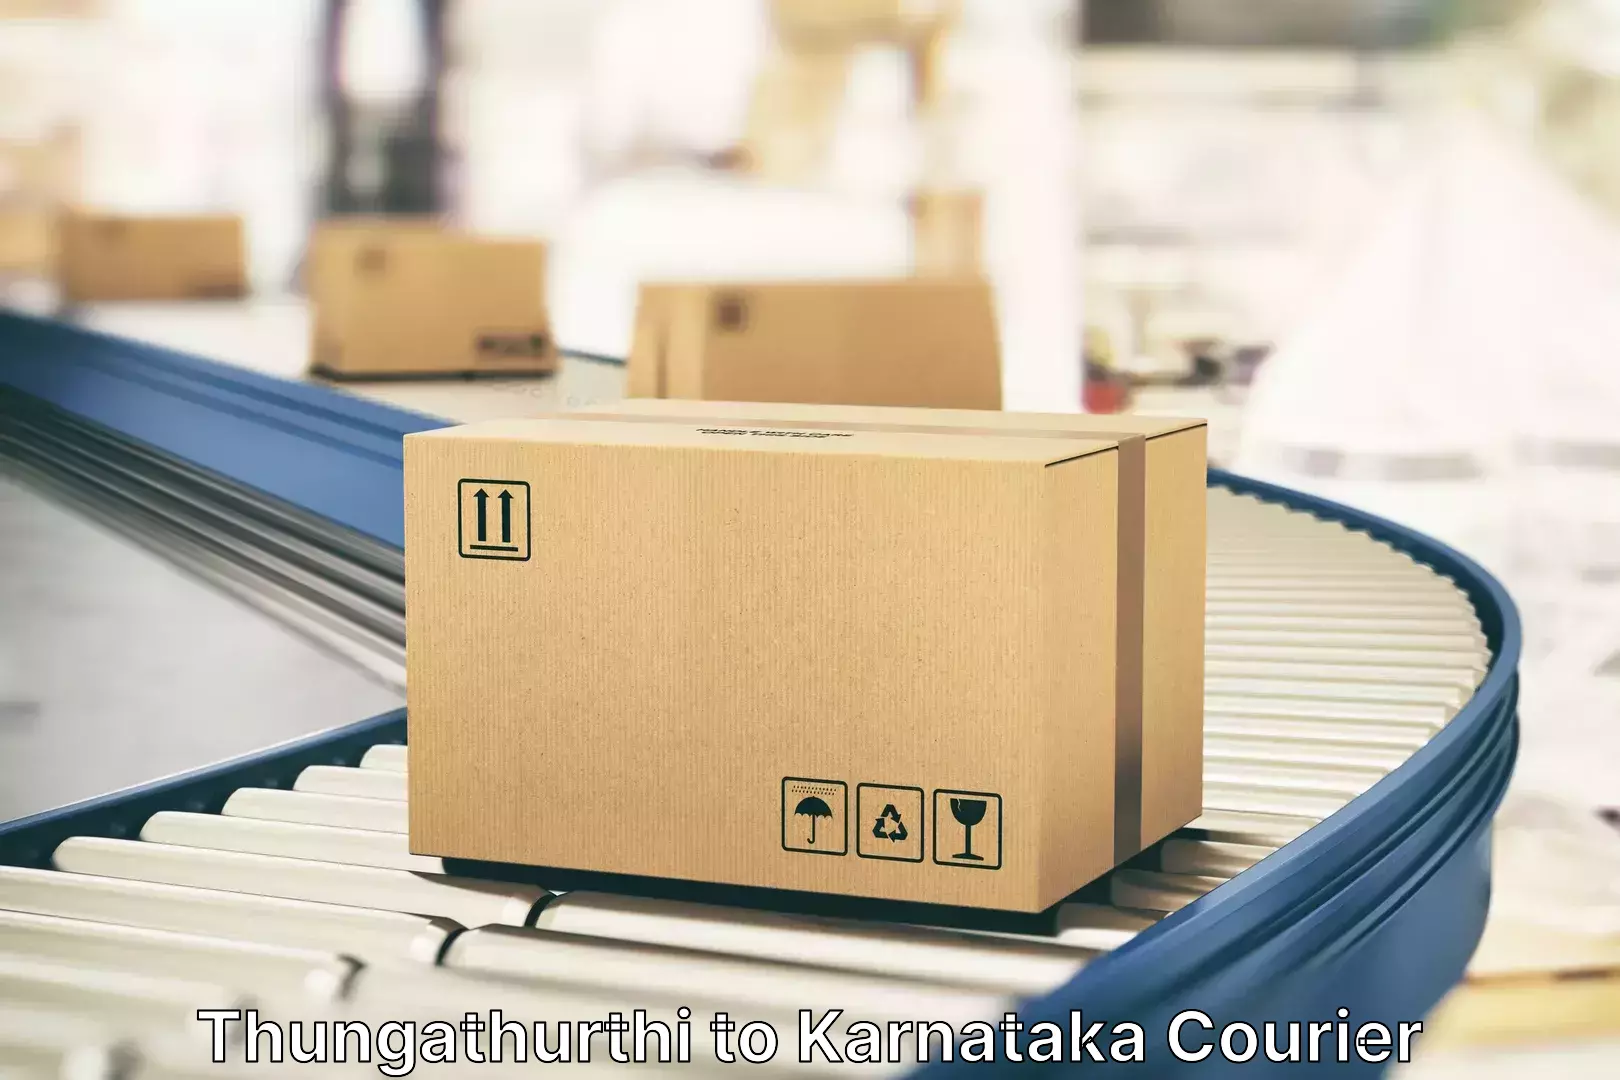 Luggage courier rates calculator Thungathurthi to Karnataka